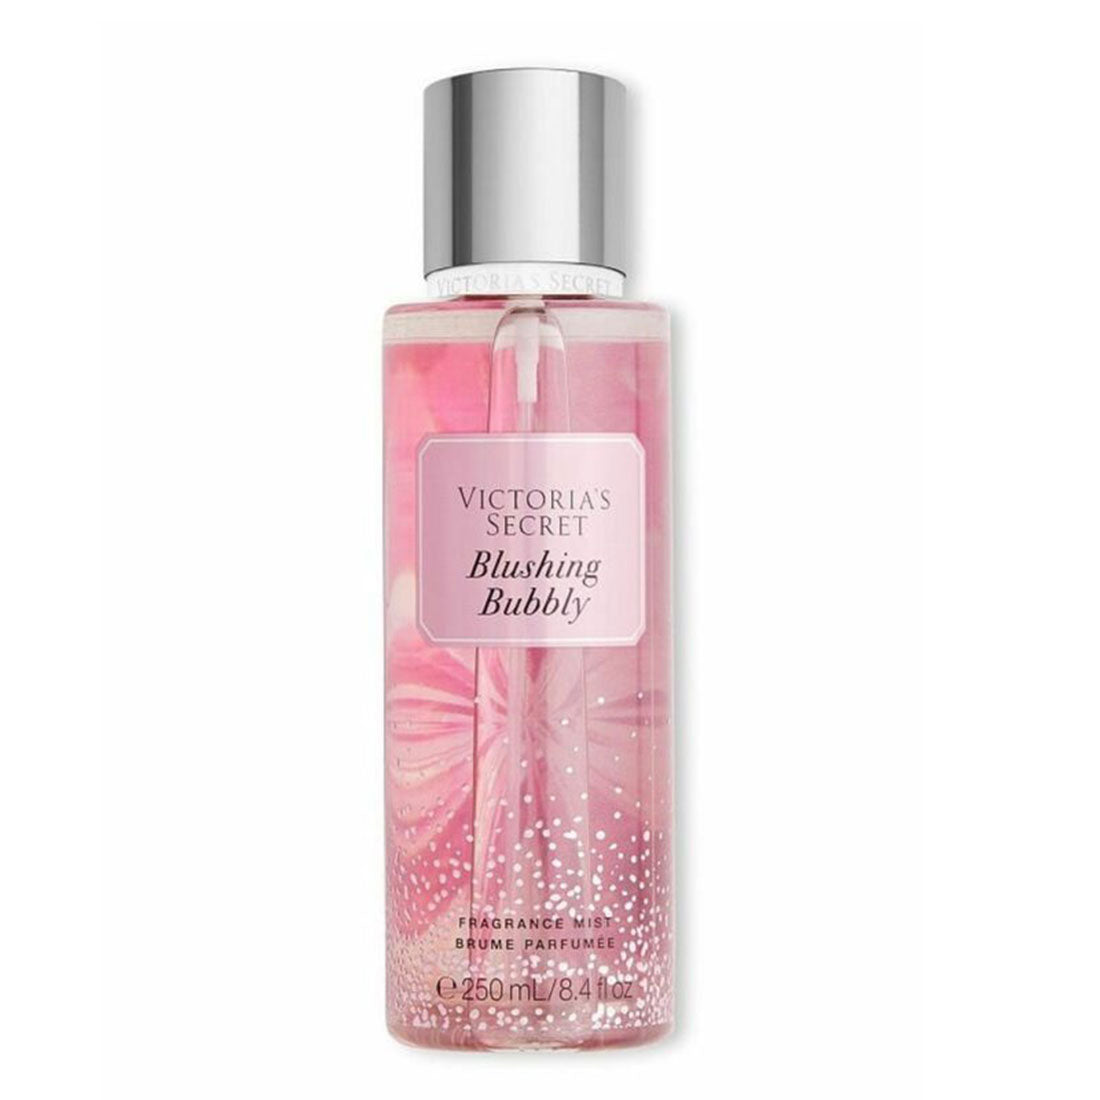 Parfums Blushing Bubbly de la marque Victoria's Secret mixte 